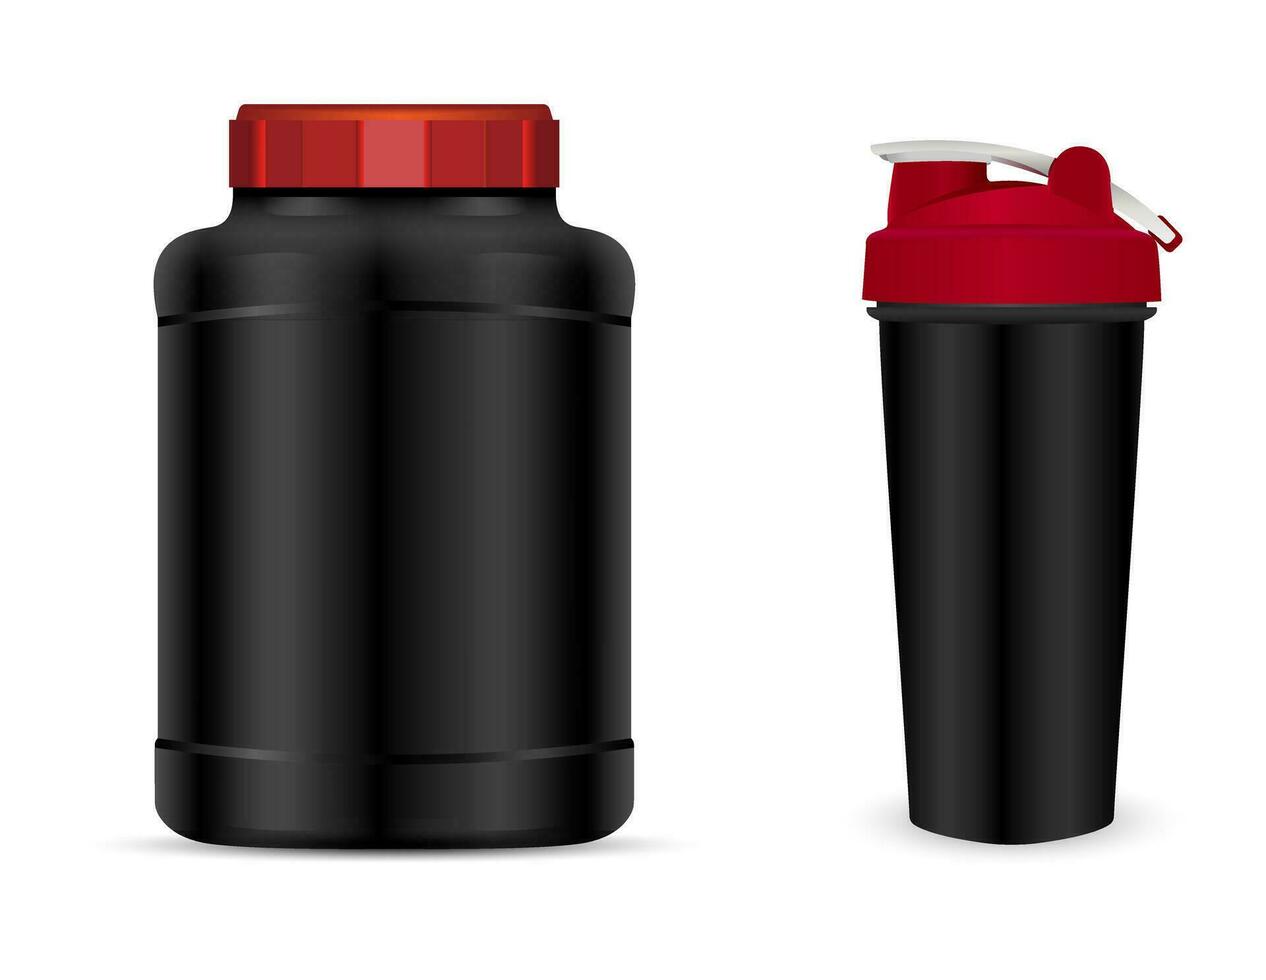 vektor uppsättning av sport näring behållare mallar med röd caps isolerat på vit bakgrund. realistisk svart plast burk, shaker och dryck flaskor.